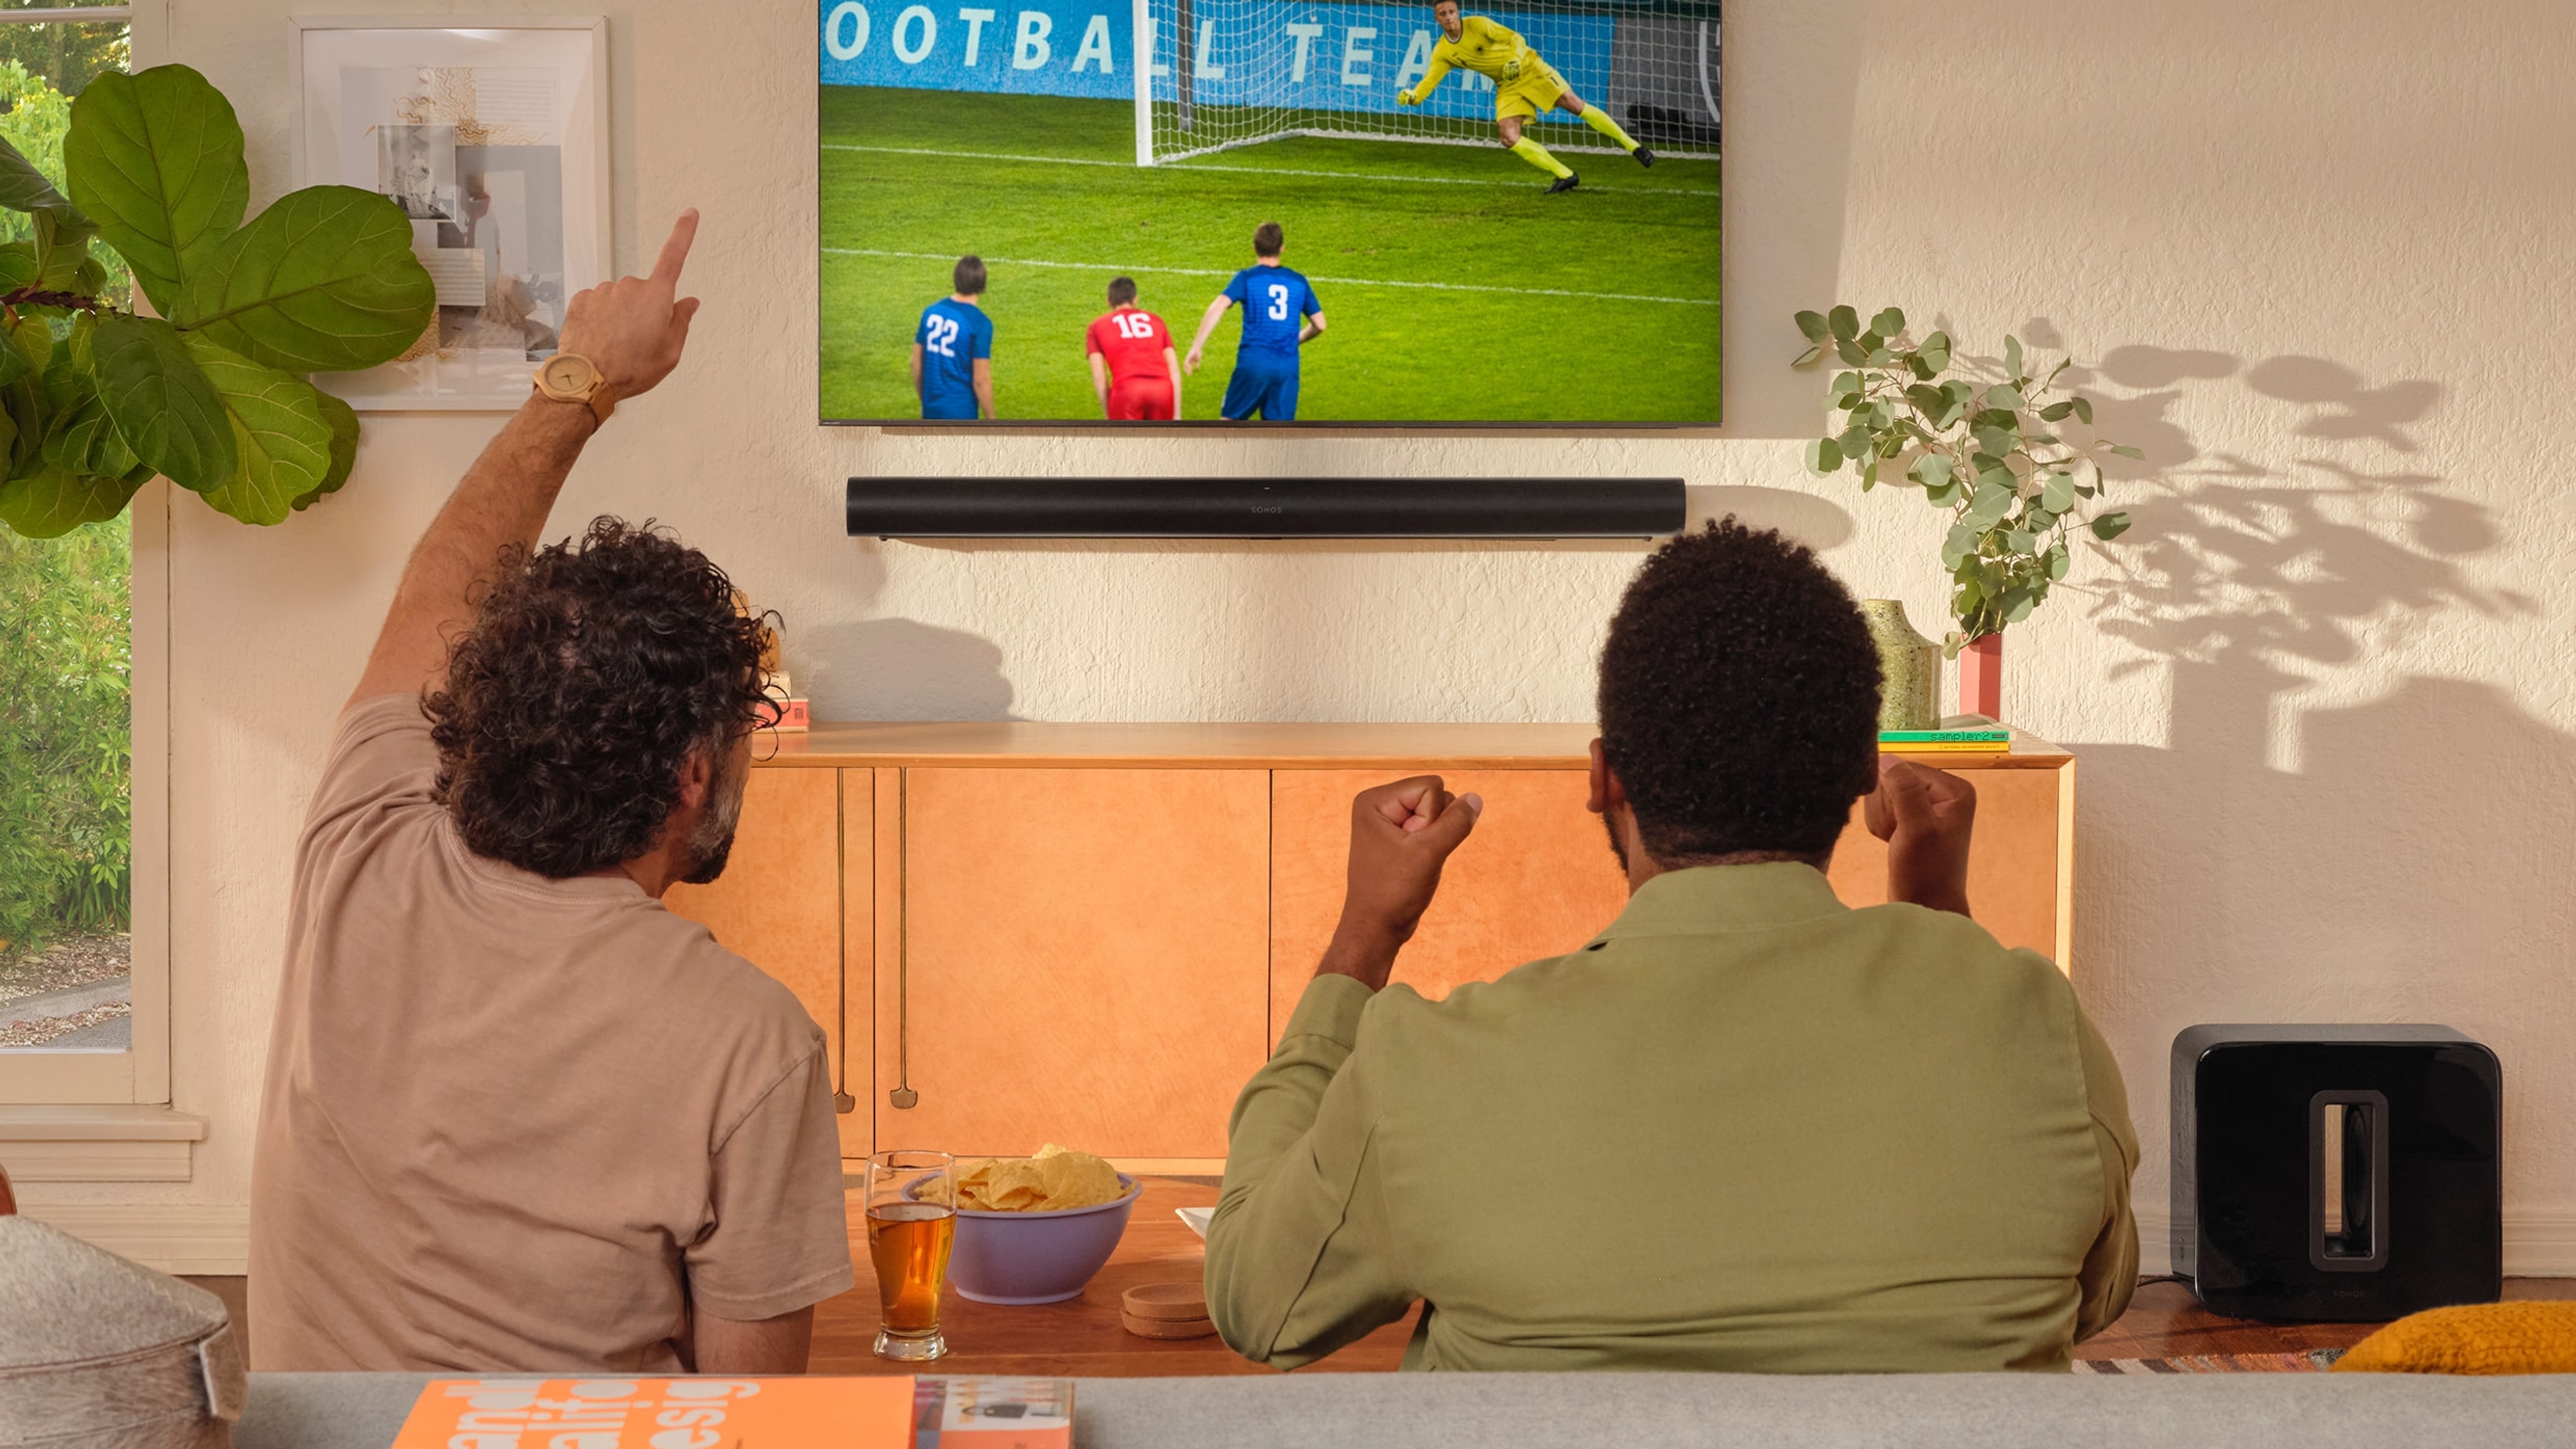 Twee mensen die voetbal kijken op een tv met een zwarte Arc en Sub